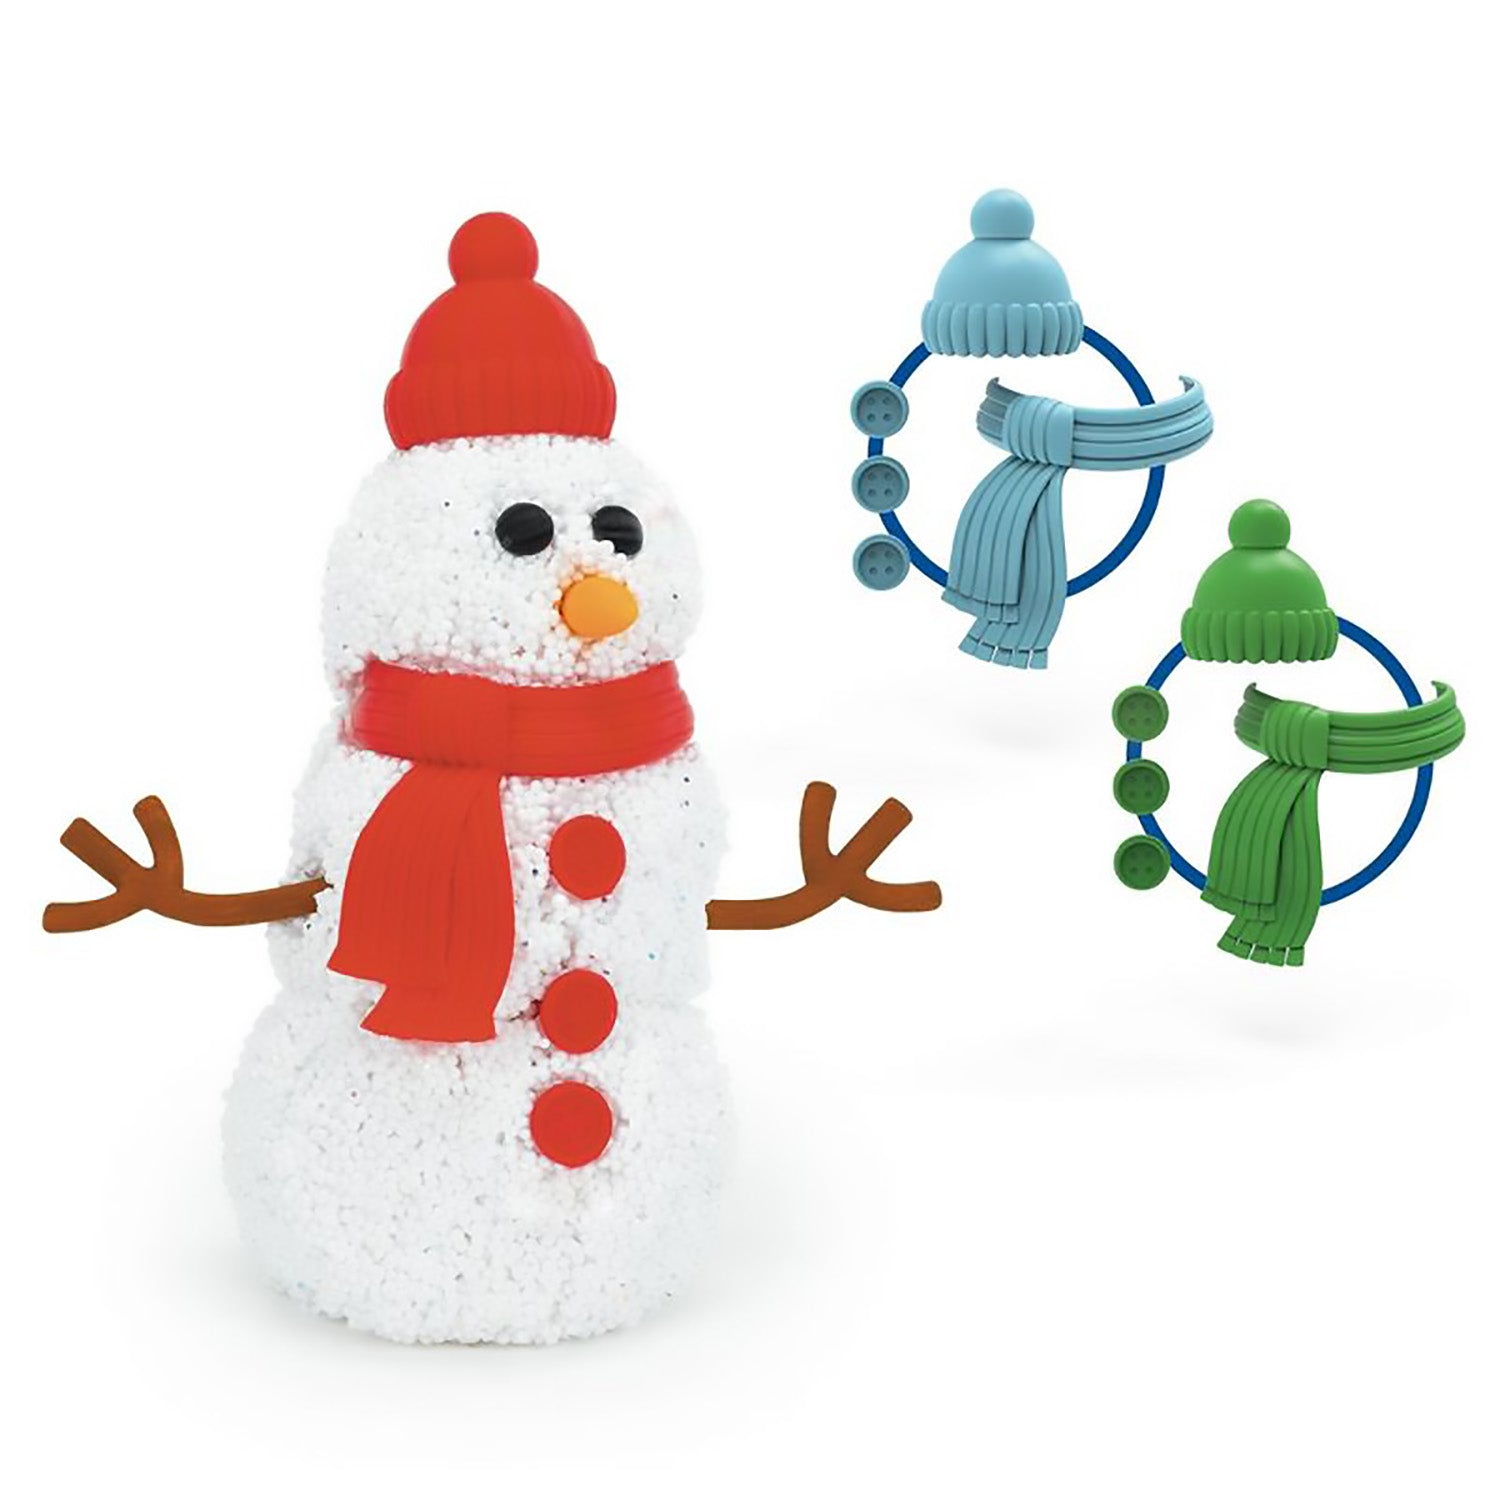 Playfoam Build-A-Snowman - Assorted